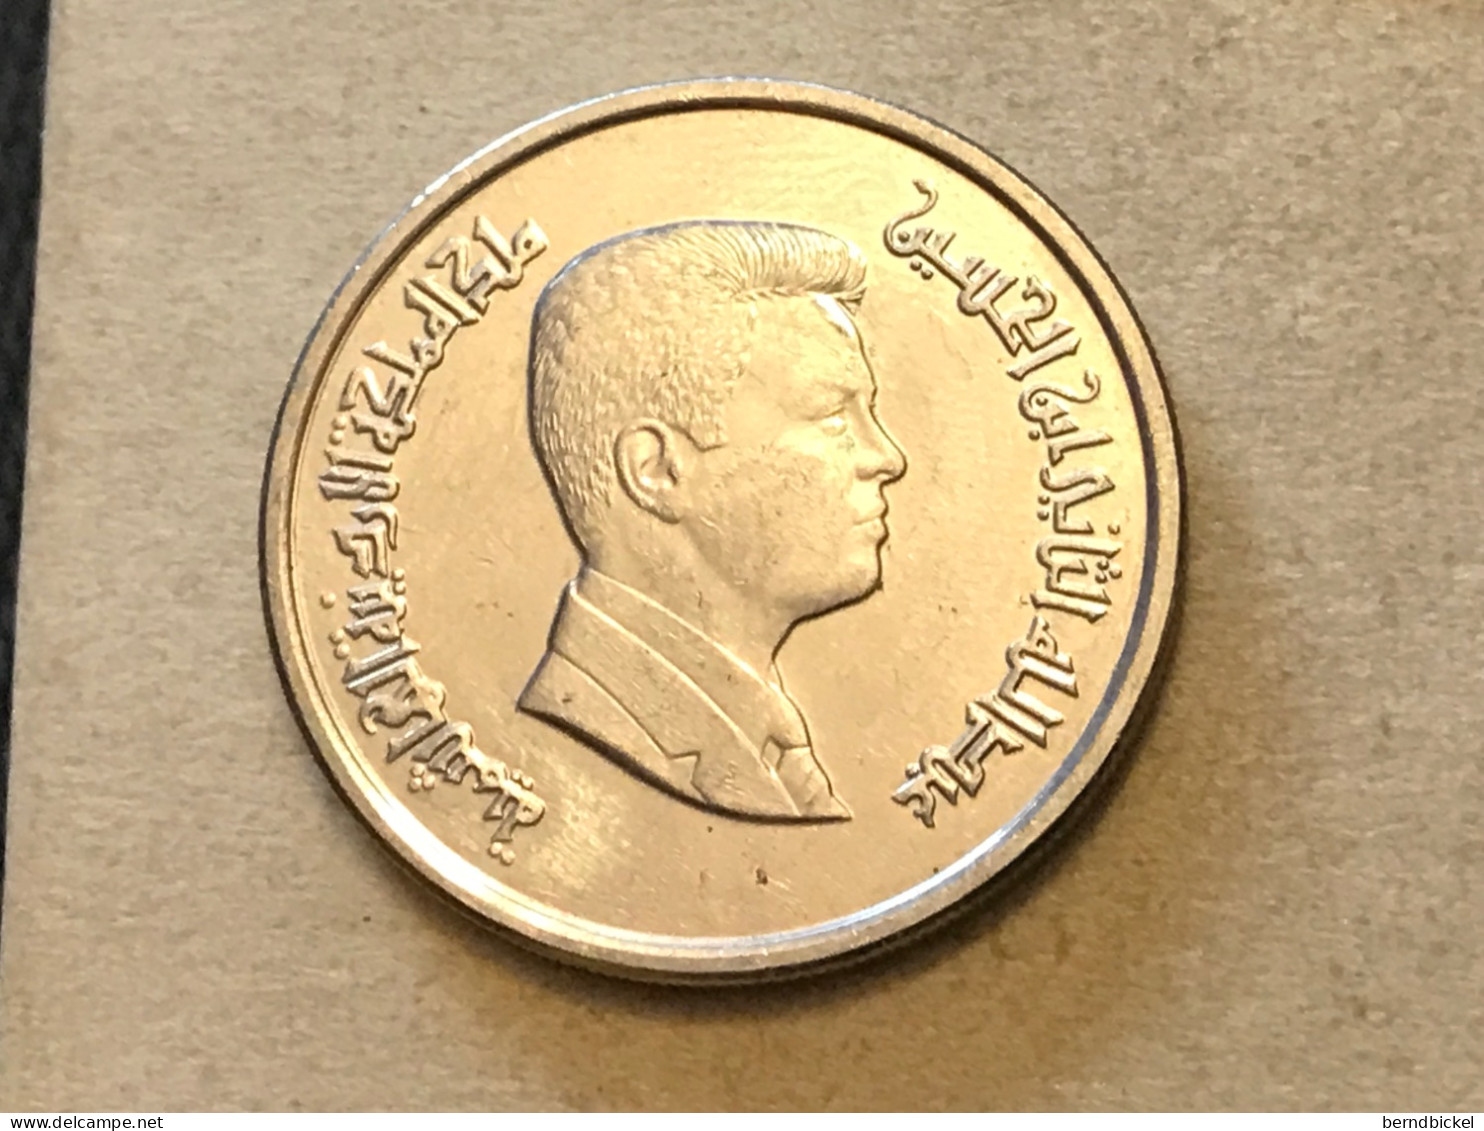 Münze Münzen Umlaufmünze Jordanien 10 Piaster 2016 - Jordanien